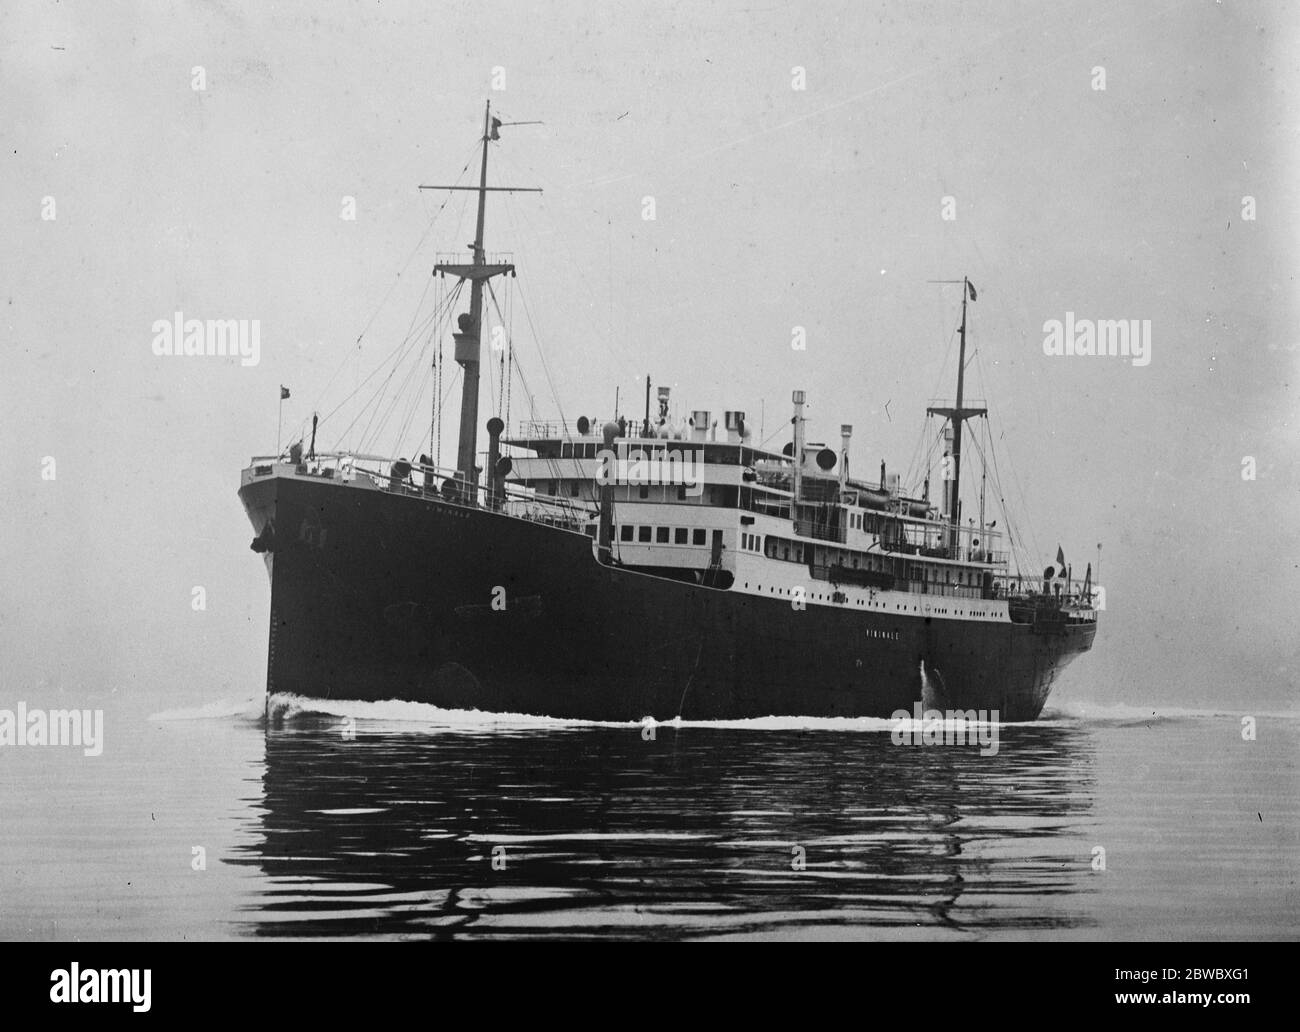 Le nouveau grand bateau à moteur Viminale du Lloyd Triestino , qui, après son voyage d'essai dans l'Adriatique le 26 octobre 1925 , naviguait pour l'extrême-Orient . 11 décembre 1925 Banque D'Images